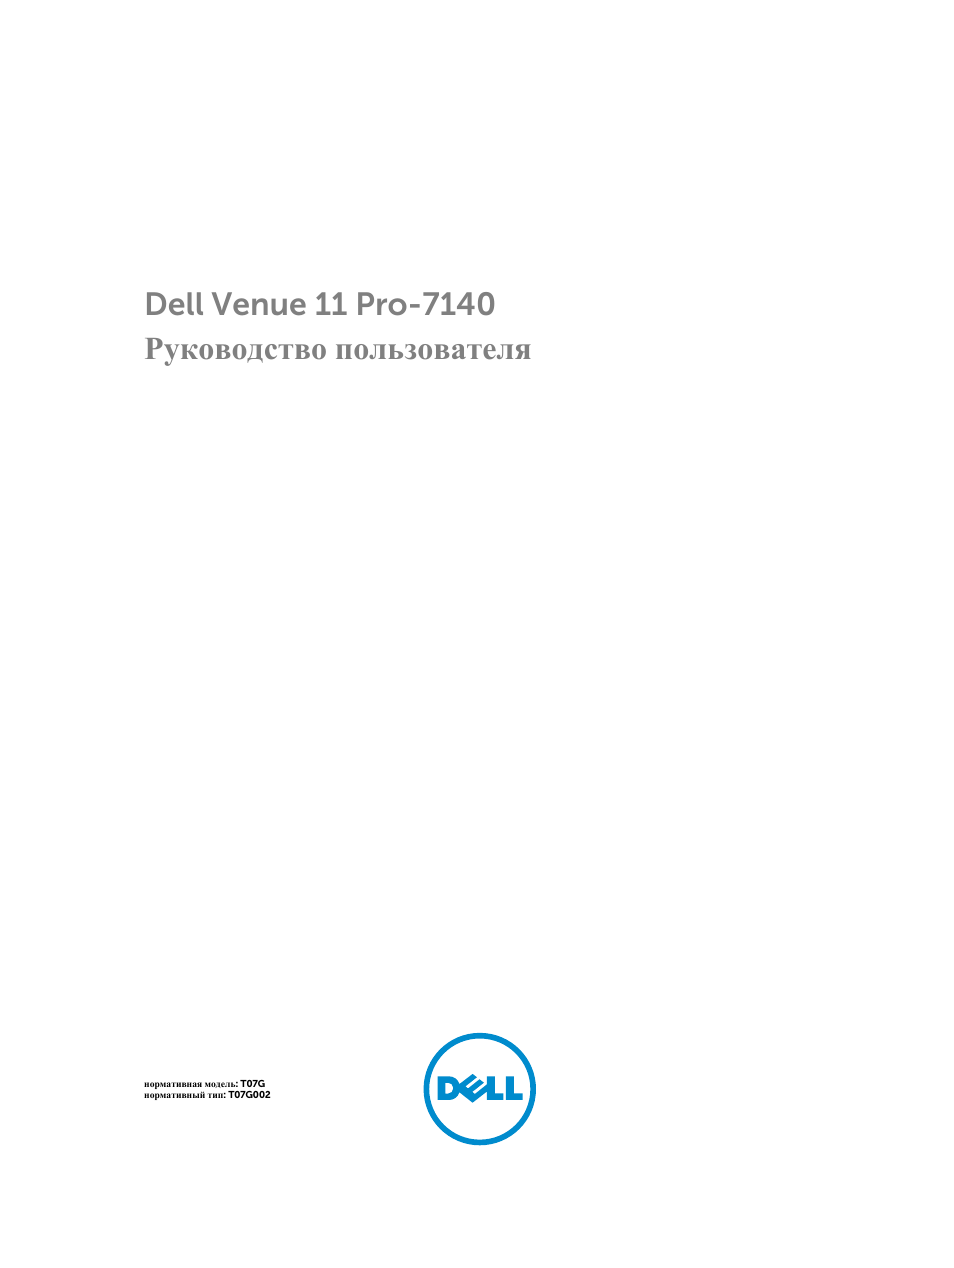 Инструкция по эксплуатации Dell Venue 11 Pro (7140, Late 2014) | 58 страниц